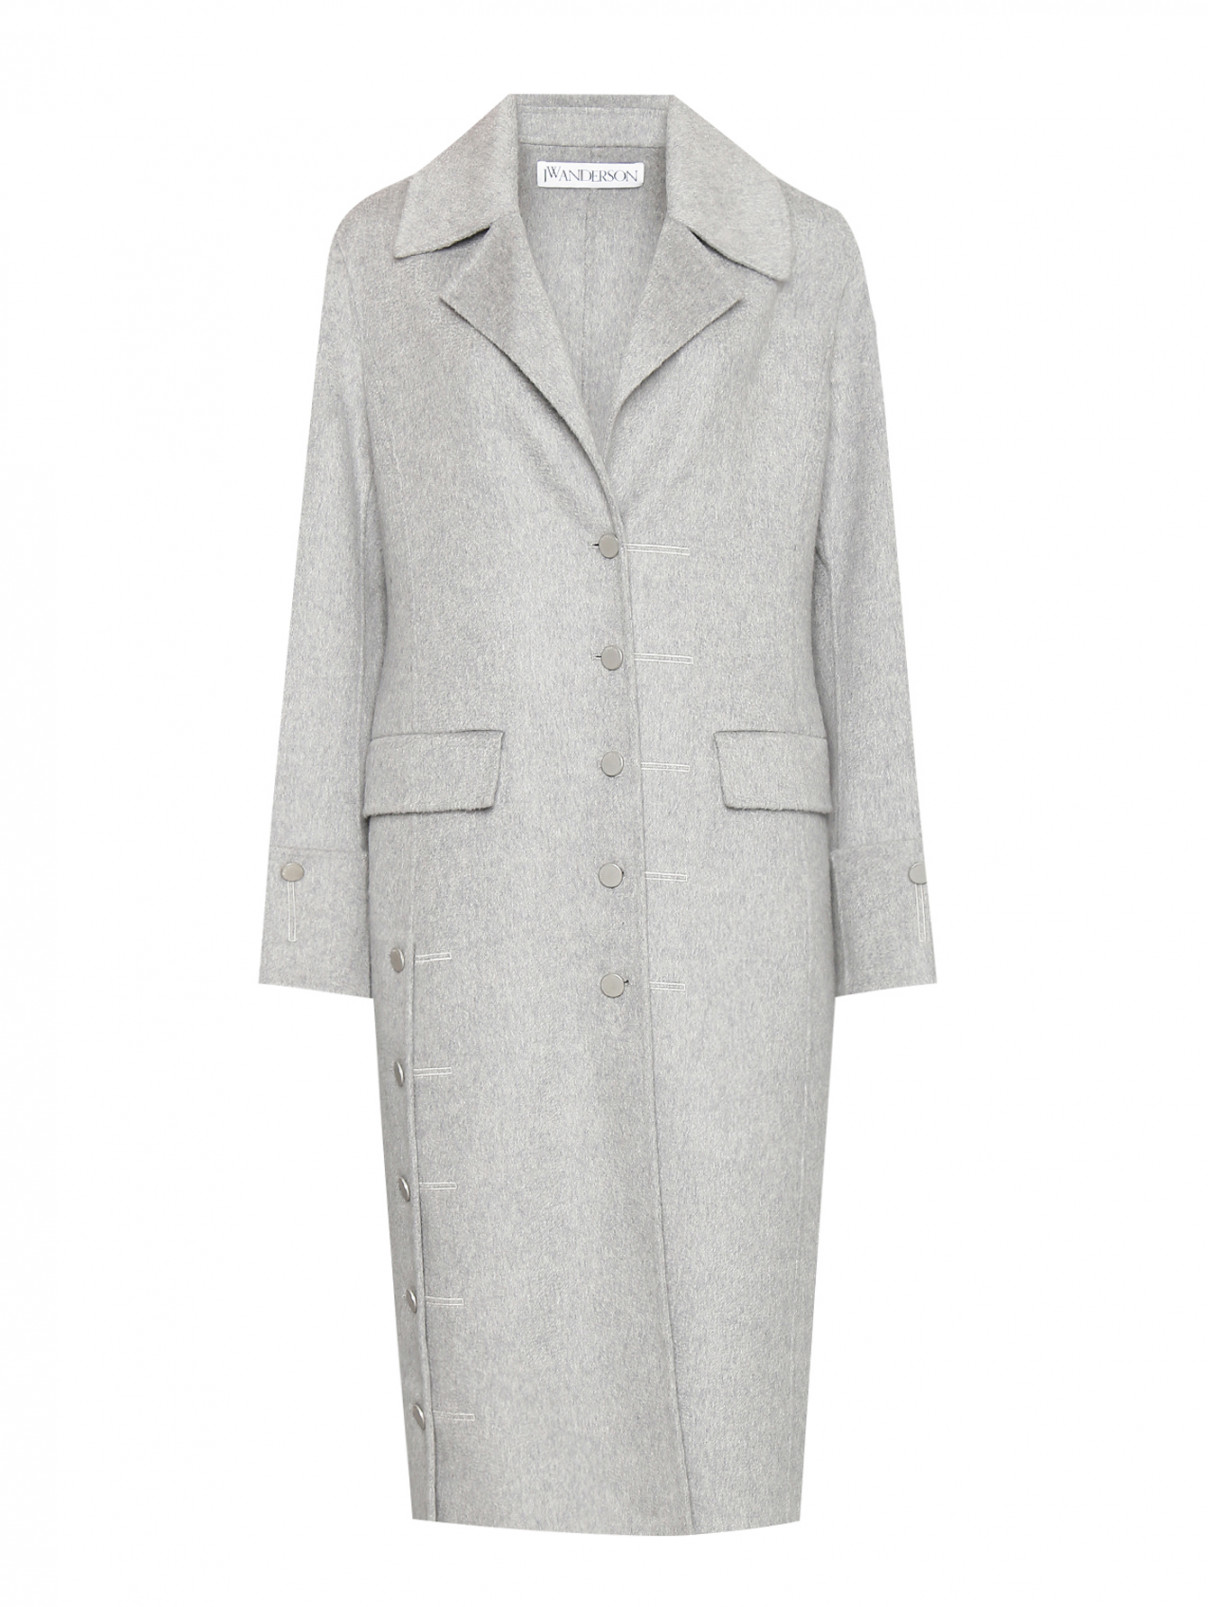 Пальто из шерсти и кашемира J.W. Anderson  –  Общий вид  – Цвет:  Серый